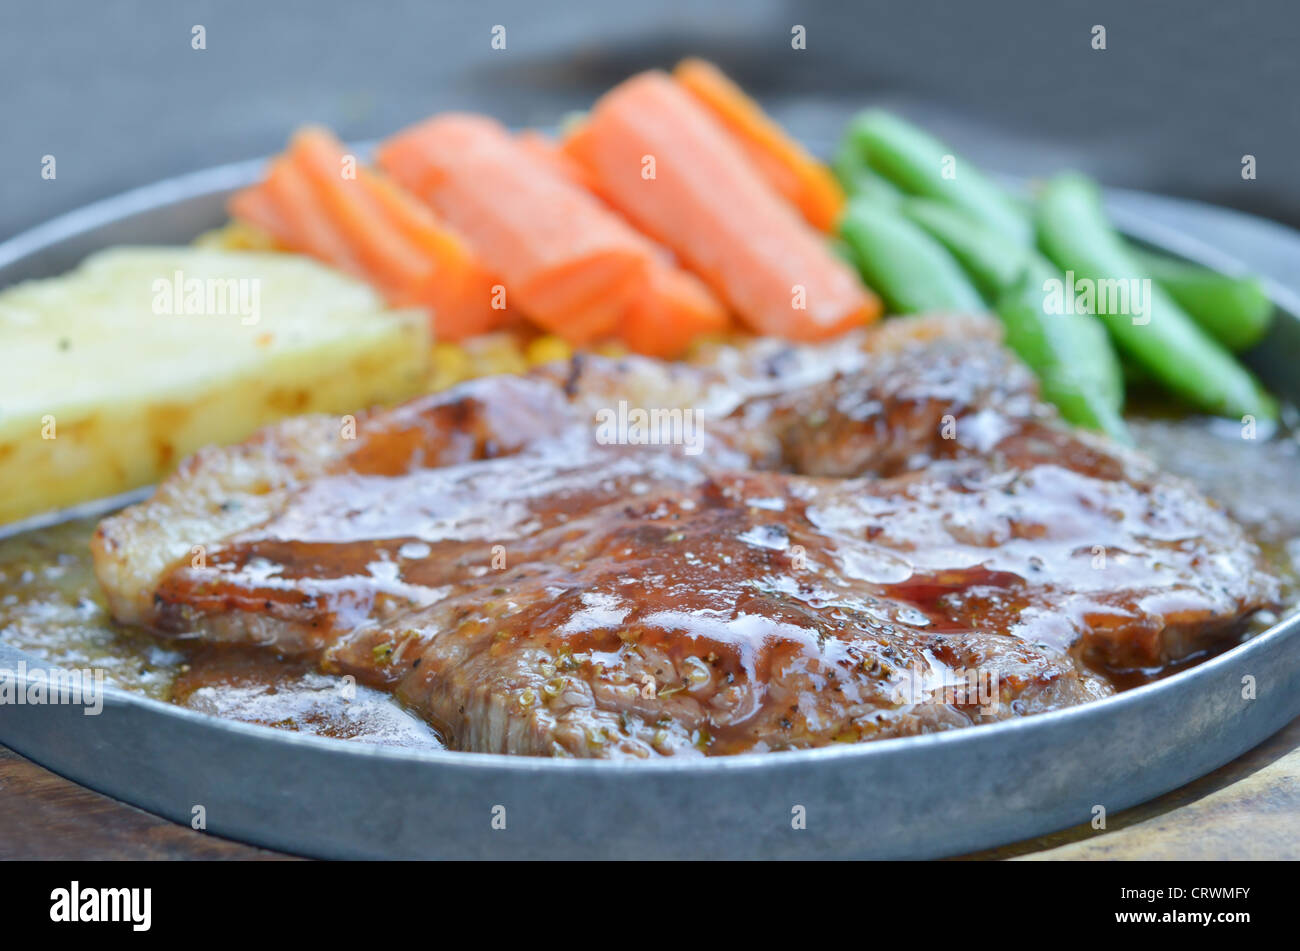 Steak de faux filet de boeuf avec sauce tomate et légumes Banque D'Images